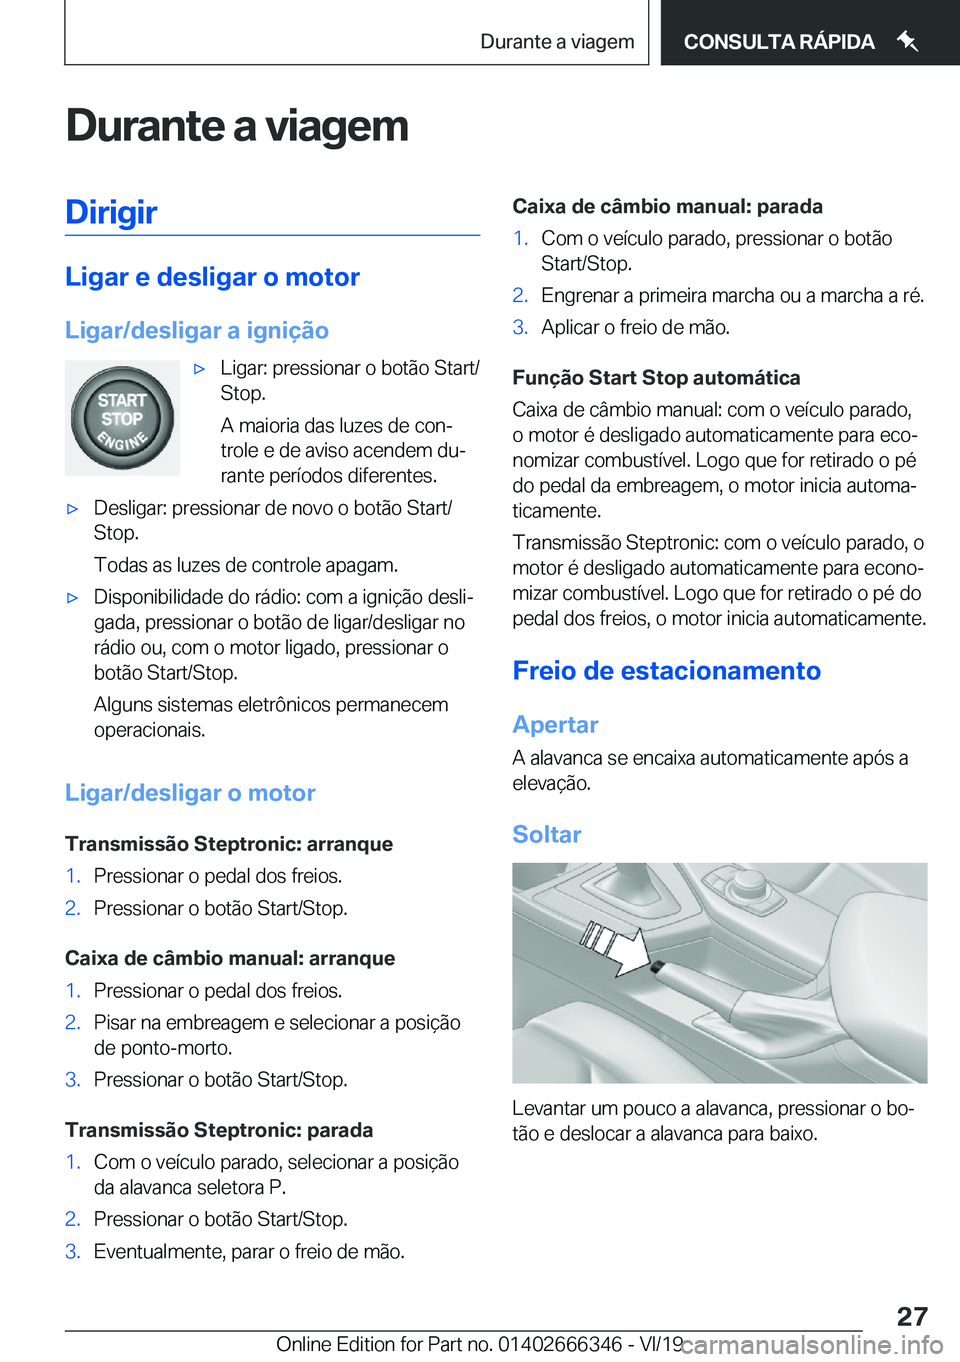 BMW 4 SERIES COUPE 2020  Manual do condutor (in Portuguese) �D�u�r�a�n�t�e��a��v�i�a�g�e�m�D�i�r�i�g�i�r
�L�i�g�a�r��e��d�e�s�l�i�g�a�r��o��m�o�t�o�r
�L�i�g�a�r�/�d�e�s�l�i�g�a�r��a��i�g�n�i�